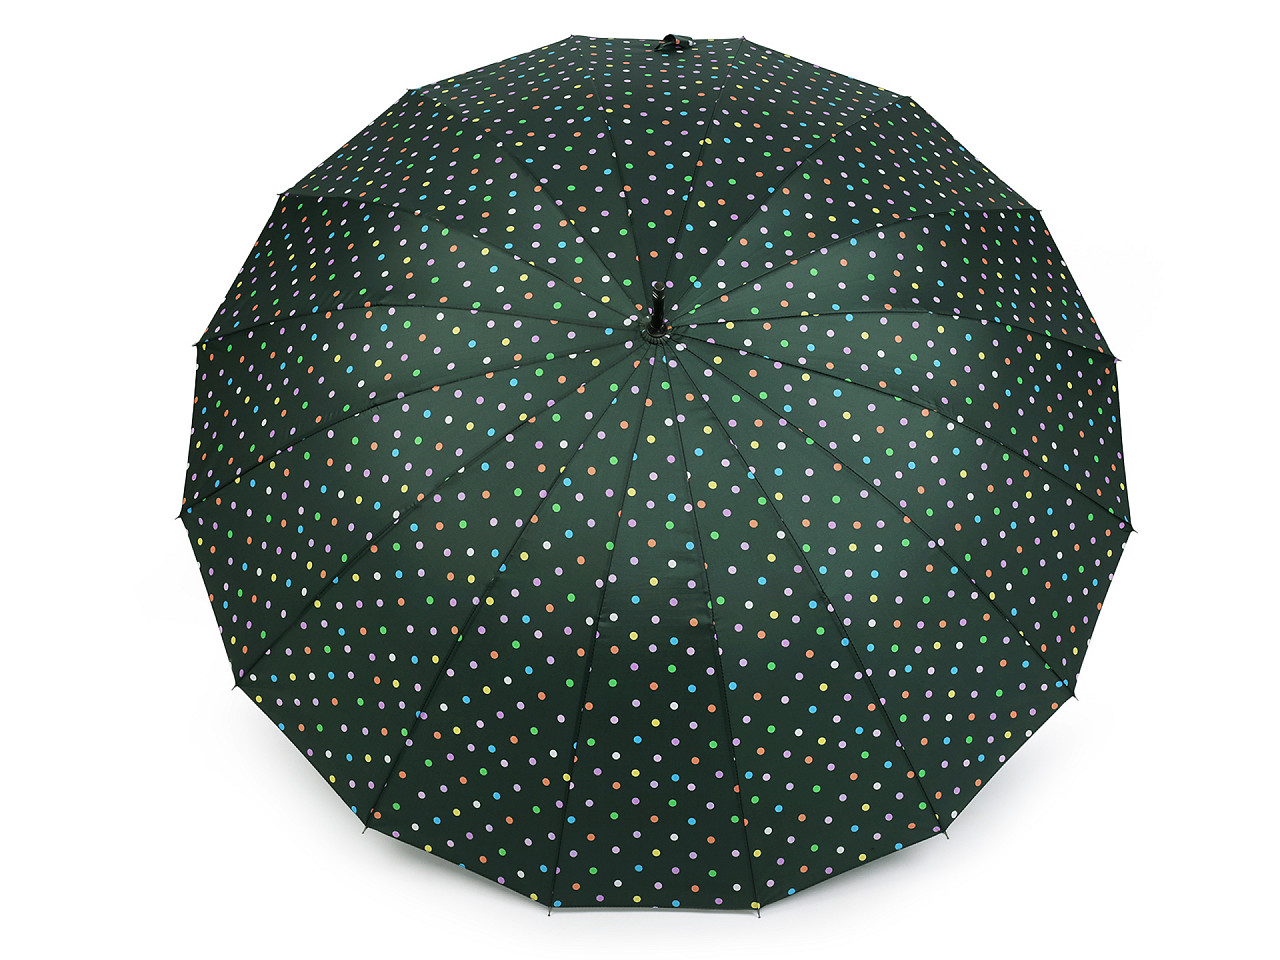 Großer Familienregenschirm mit Punkten, dunkelgrün, 1 Stk.